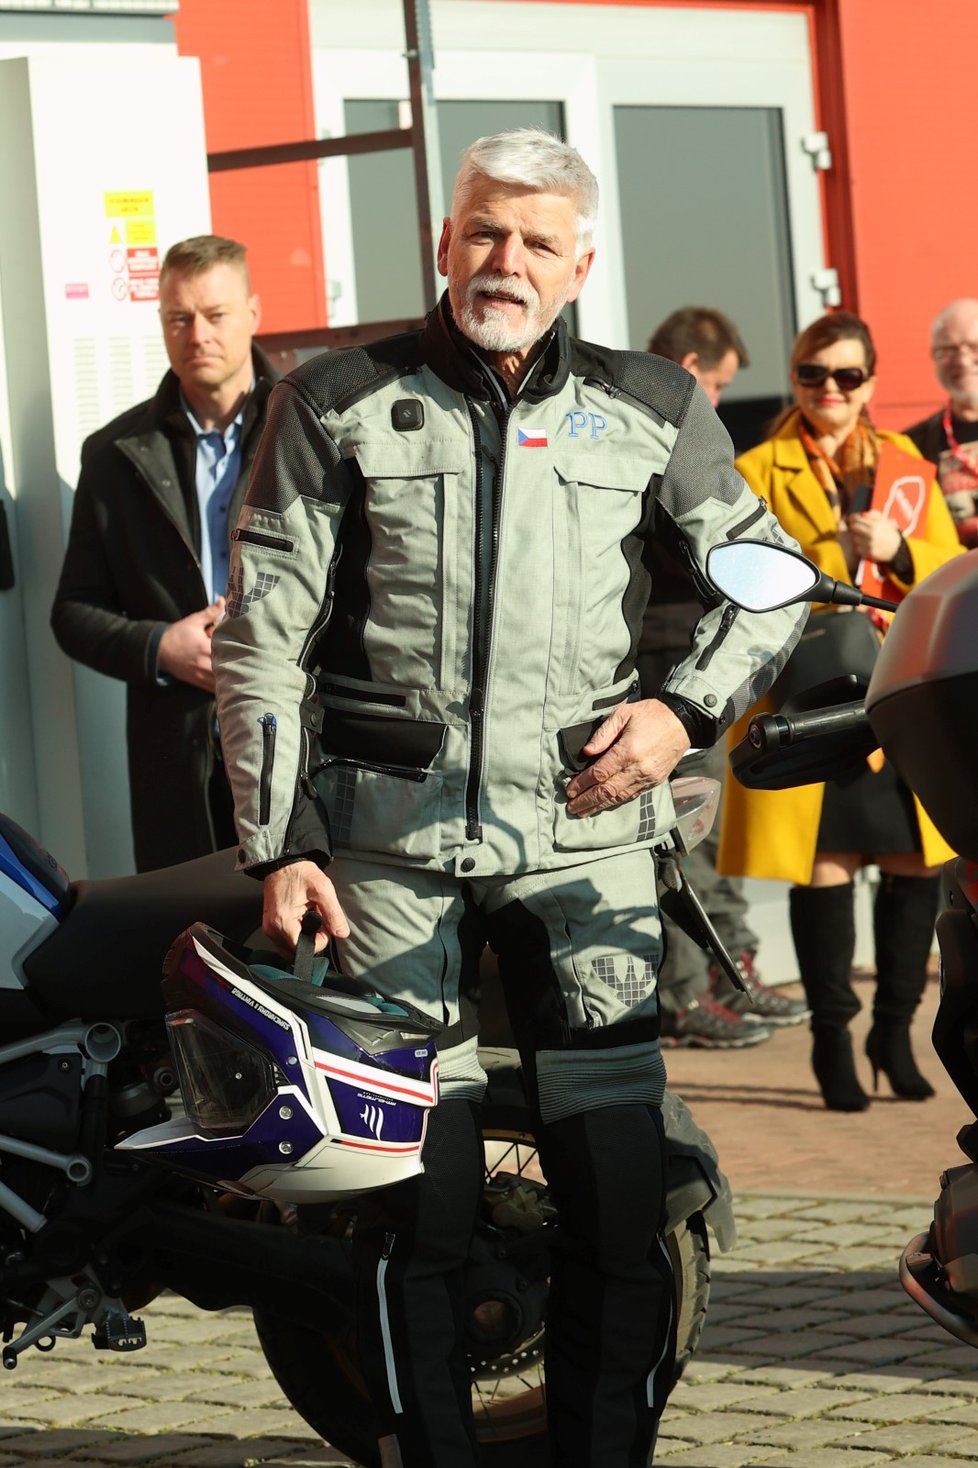 Petr Pavel zahájil motorkářský veletrh v Praze na motorce (2.3.2023).